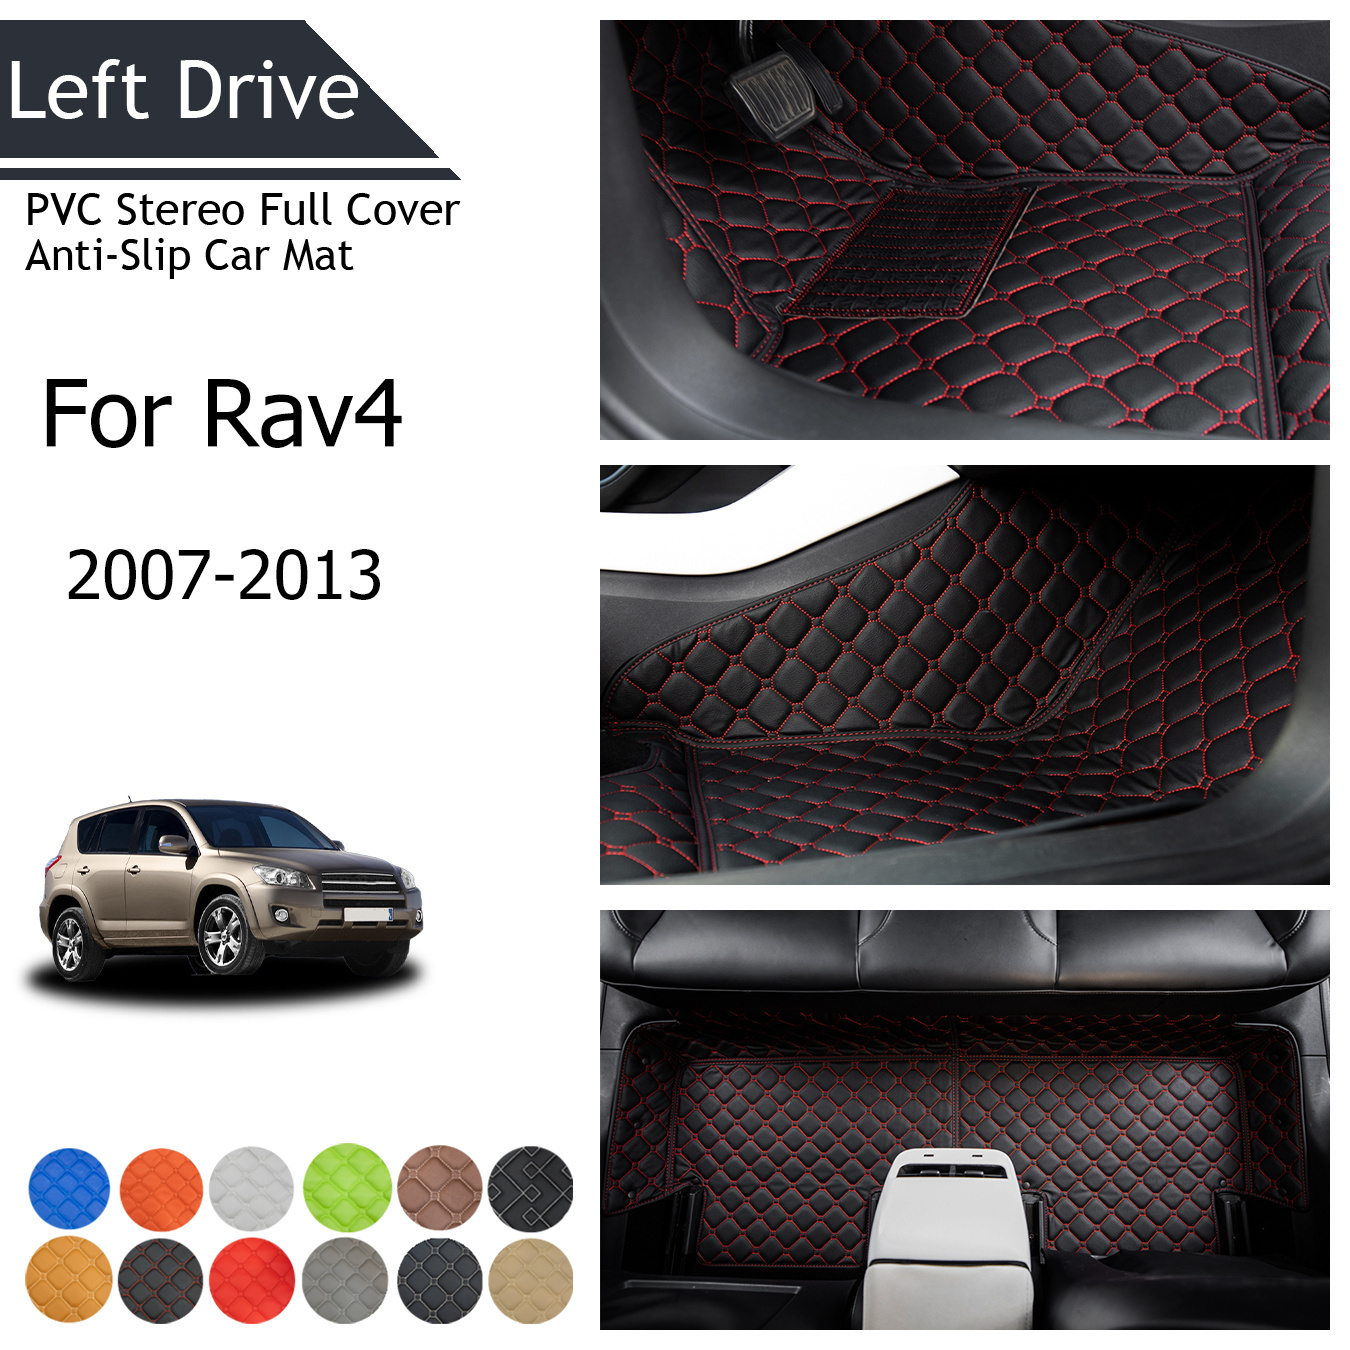 

Tegart [lhd] For Rav4 2007-2013 3 Layer Pvc Stereo Full Cover Anti-slip Car Mat